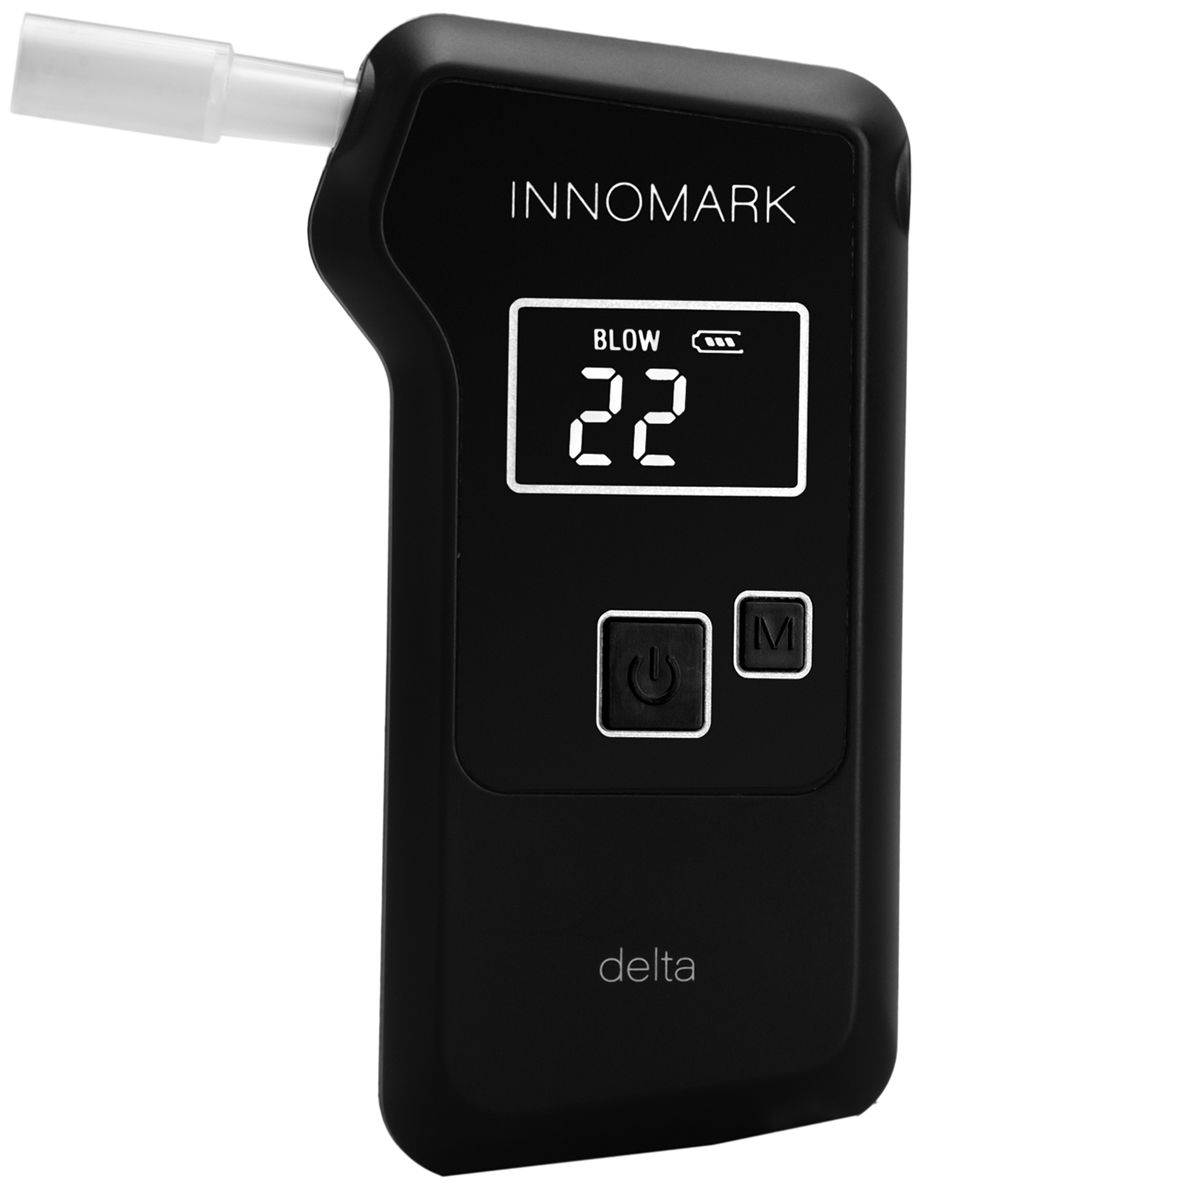 Alkoholtester INNOMARK delta mit elektrochemischem Sensor und LC Display